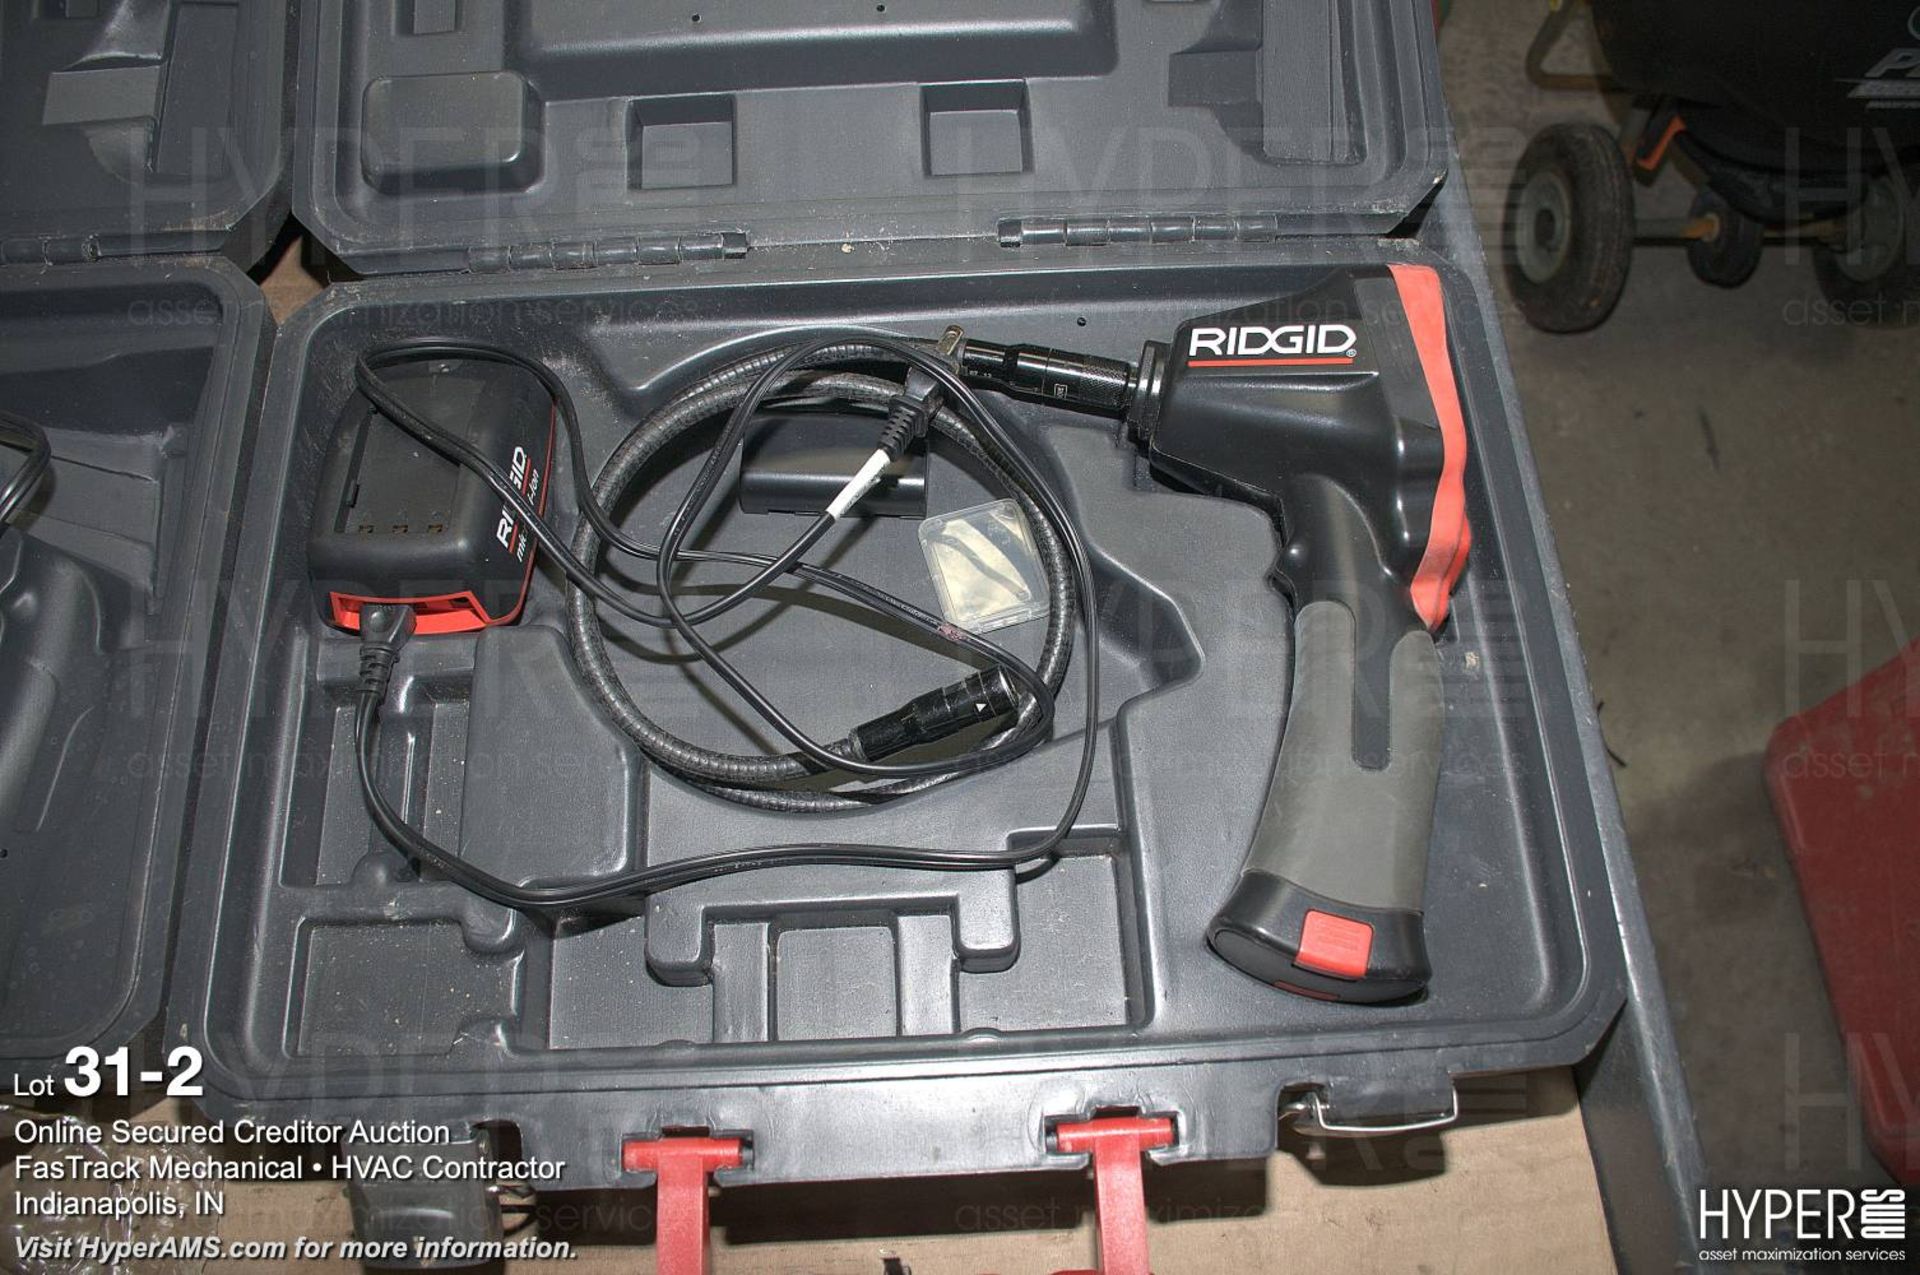 Ridgid Micro CA 300 hand held borescope - Image 2 of 3